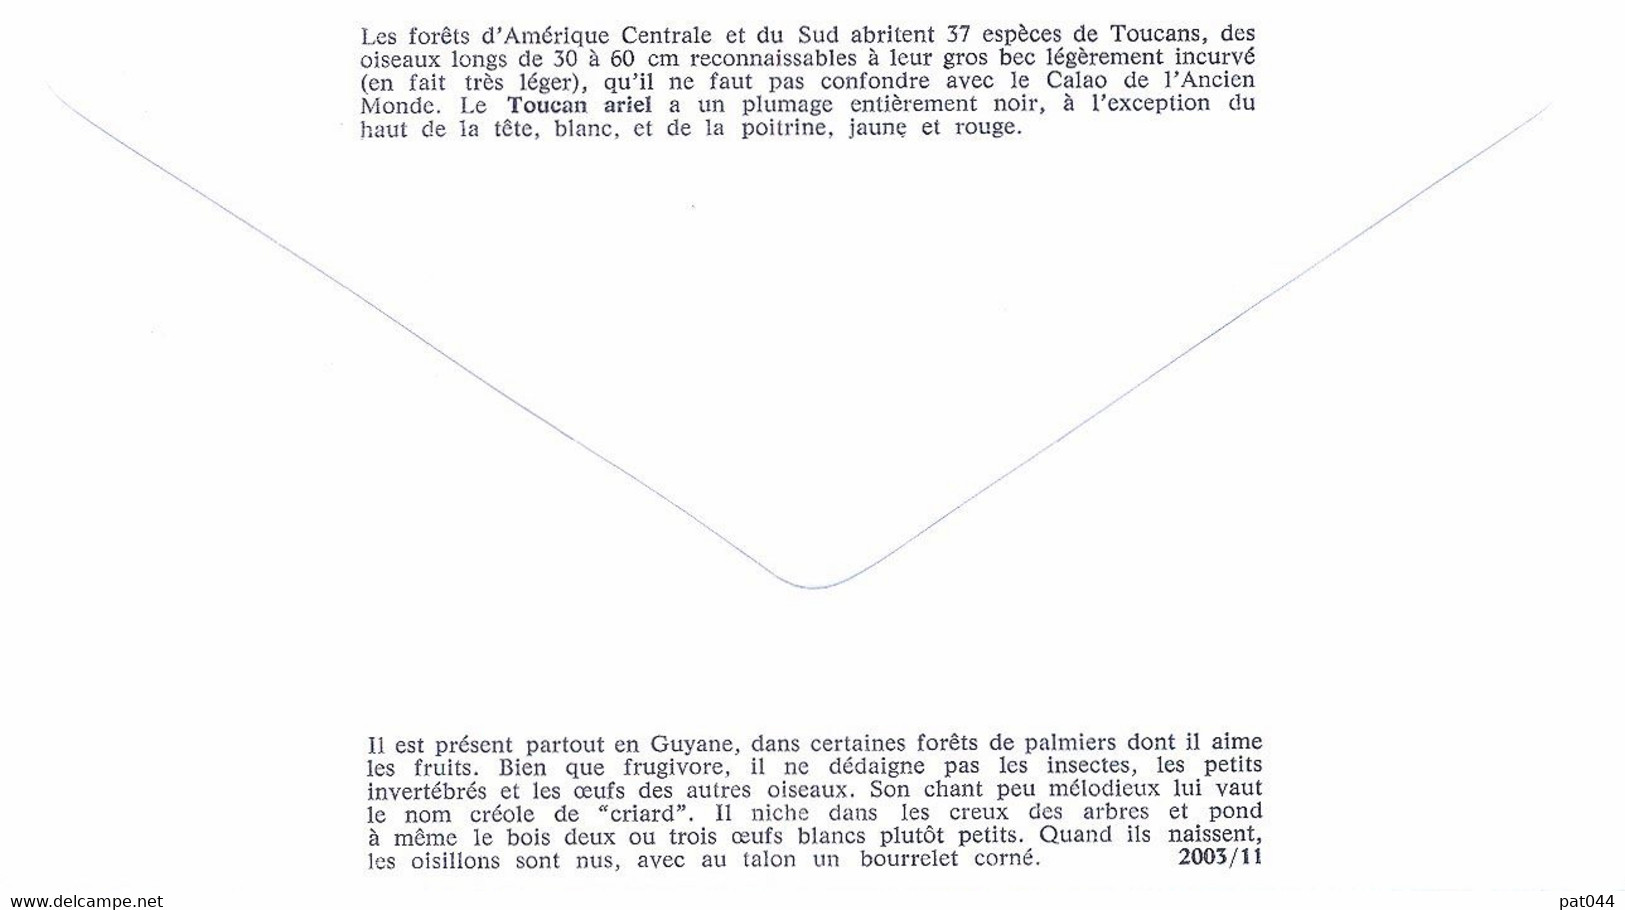 Enveloppe 1er Jour Toucan Ariel, Oiseaux D'outre-mer 2003 (YT 3549) - 2000-2009